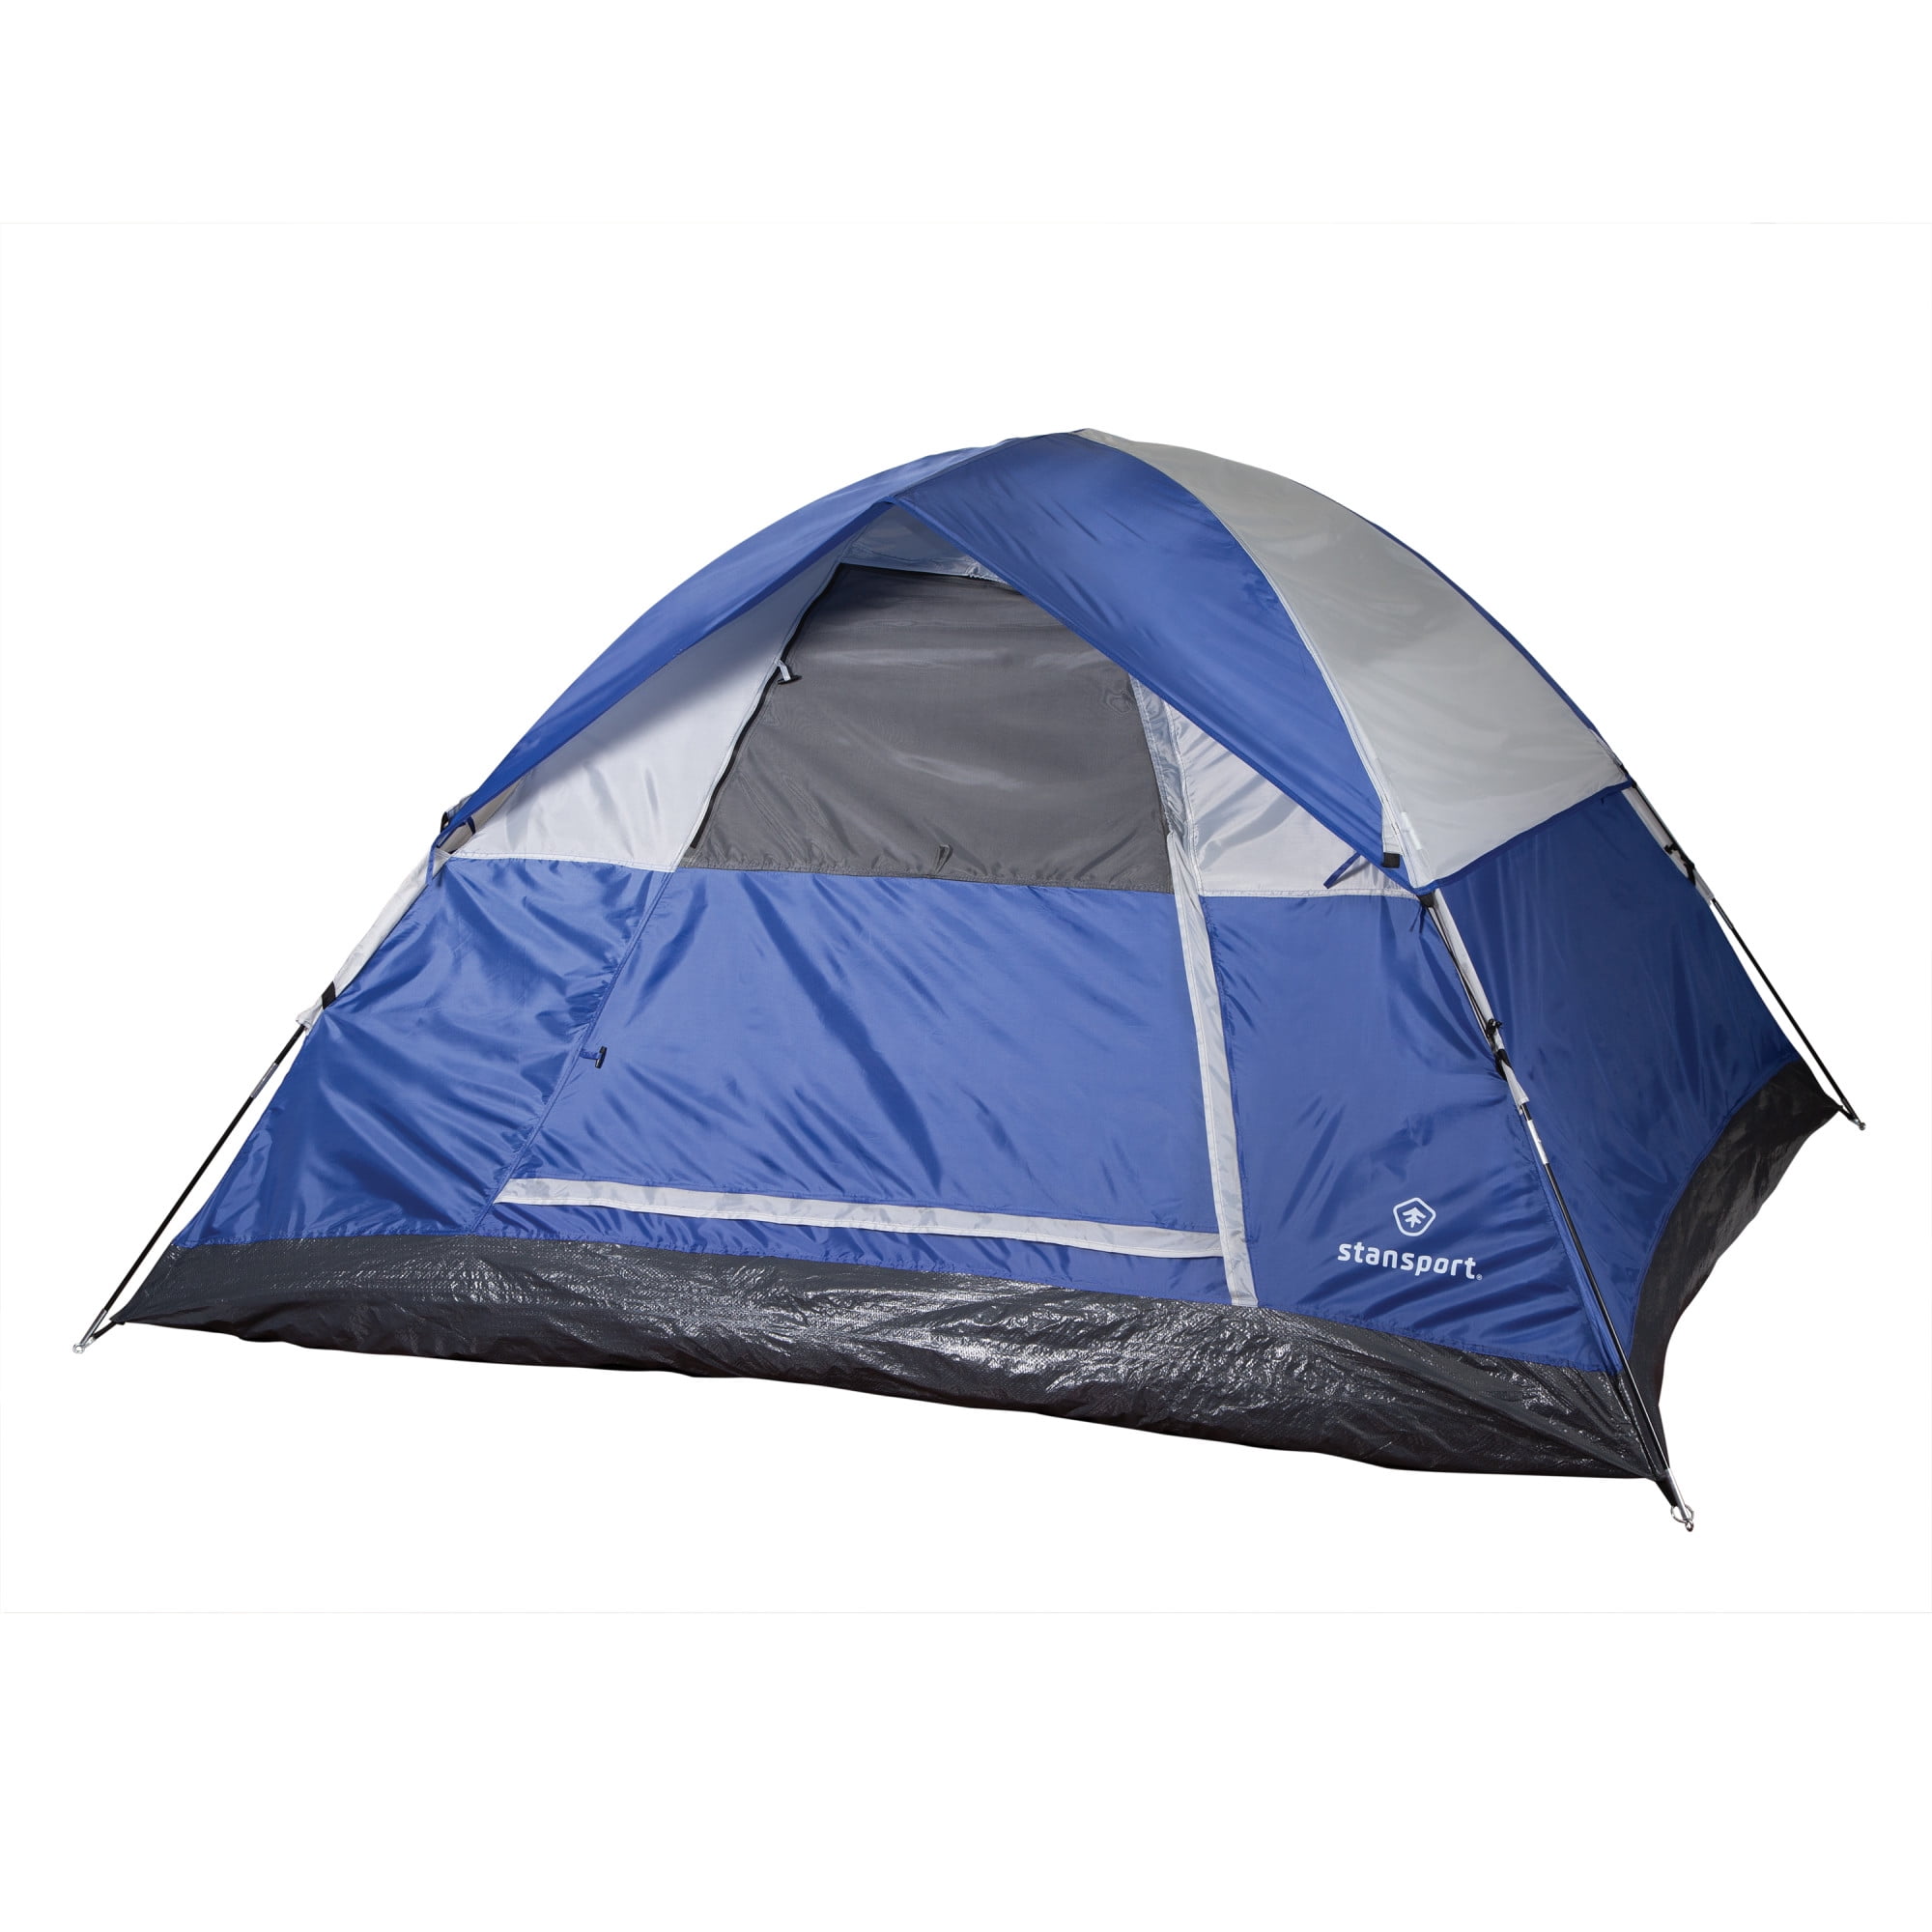 Texsport Expedition Tent - Walmart.com